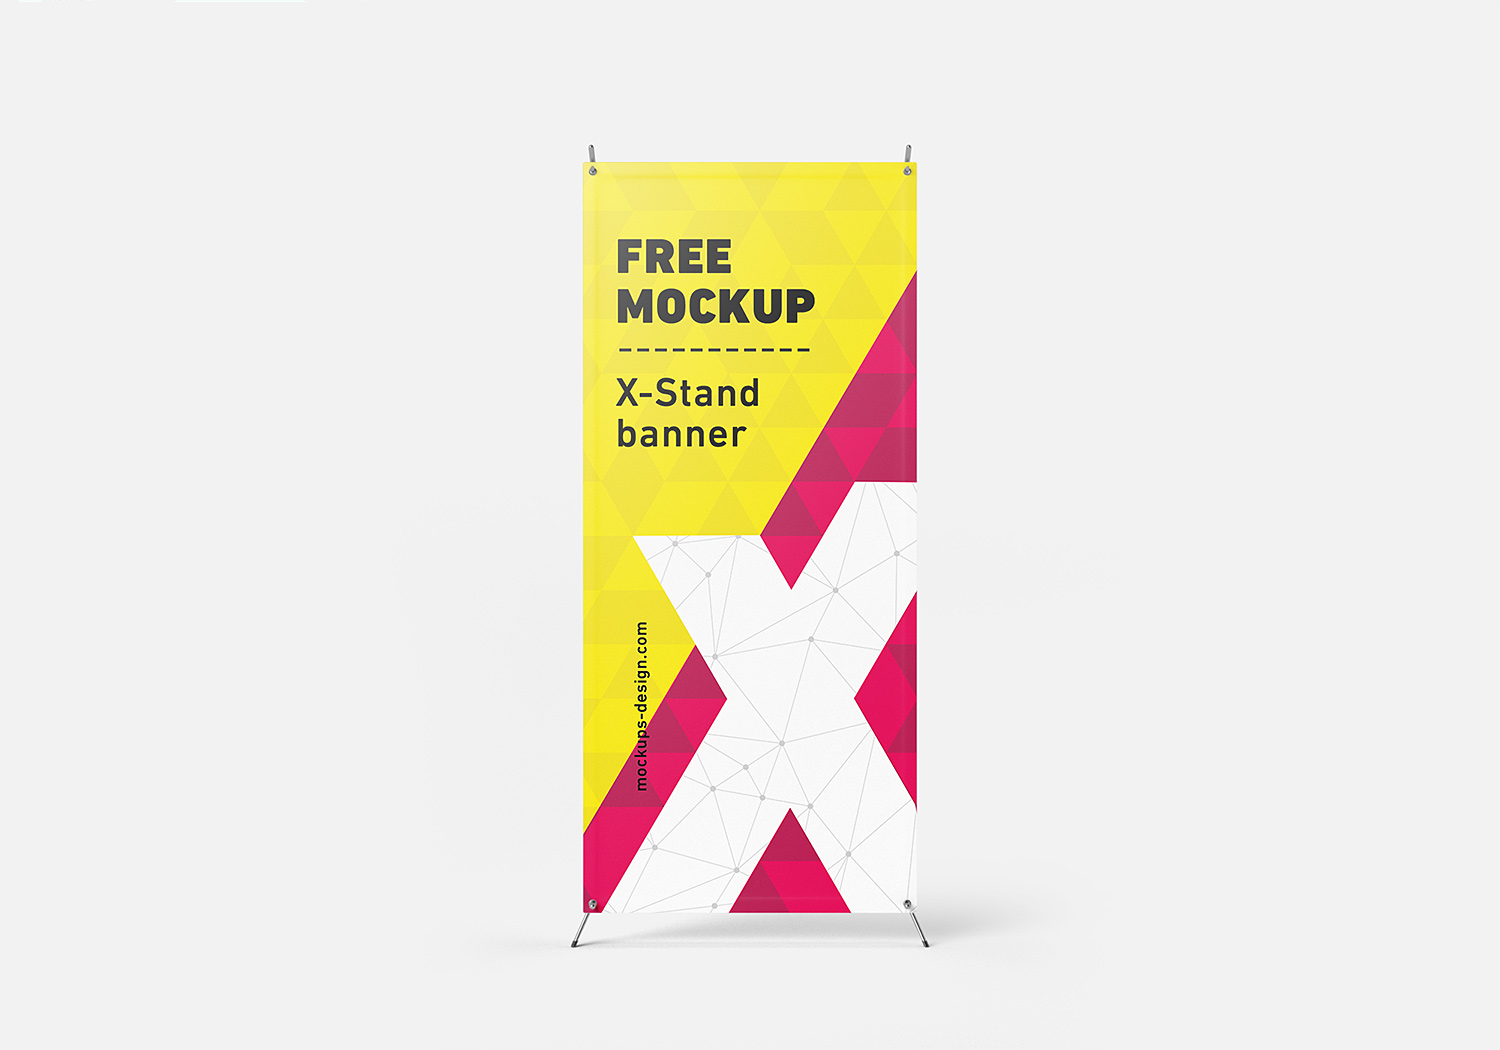 Free-X-Baner-Mockup-PSD-03